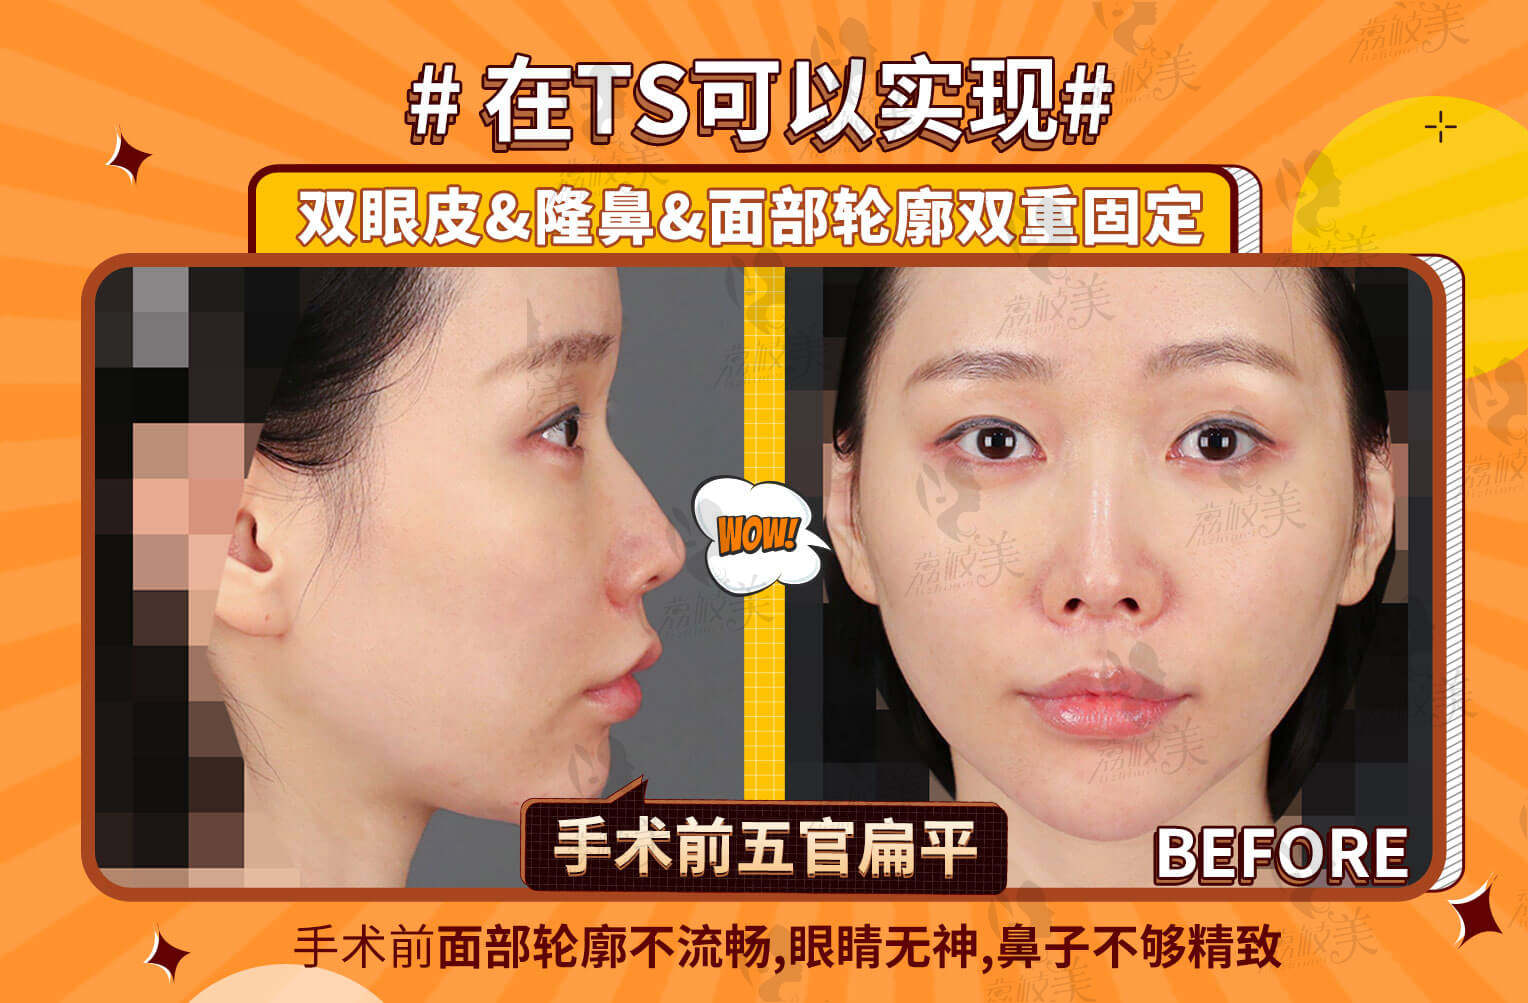 韩国TS整形医院眼鼻+面部轮廓双重固定术前